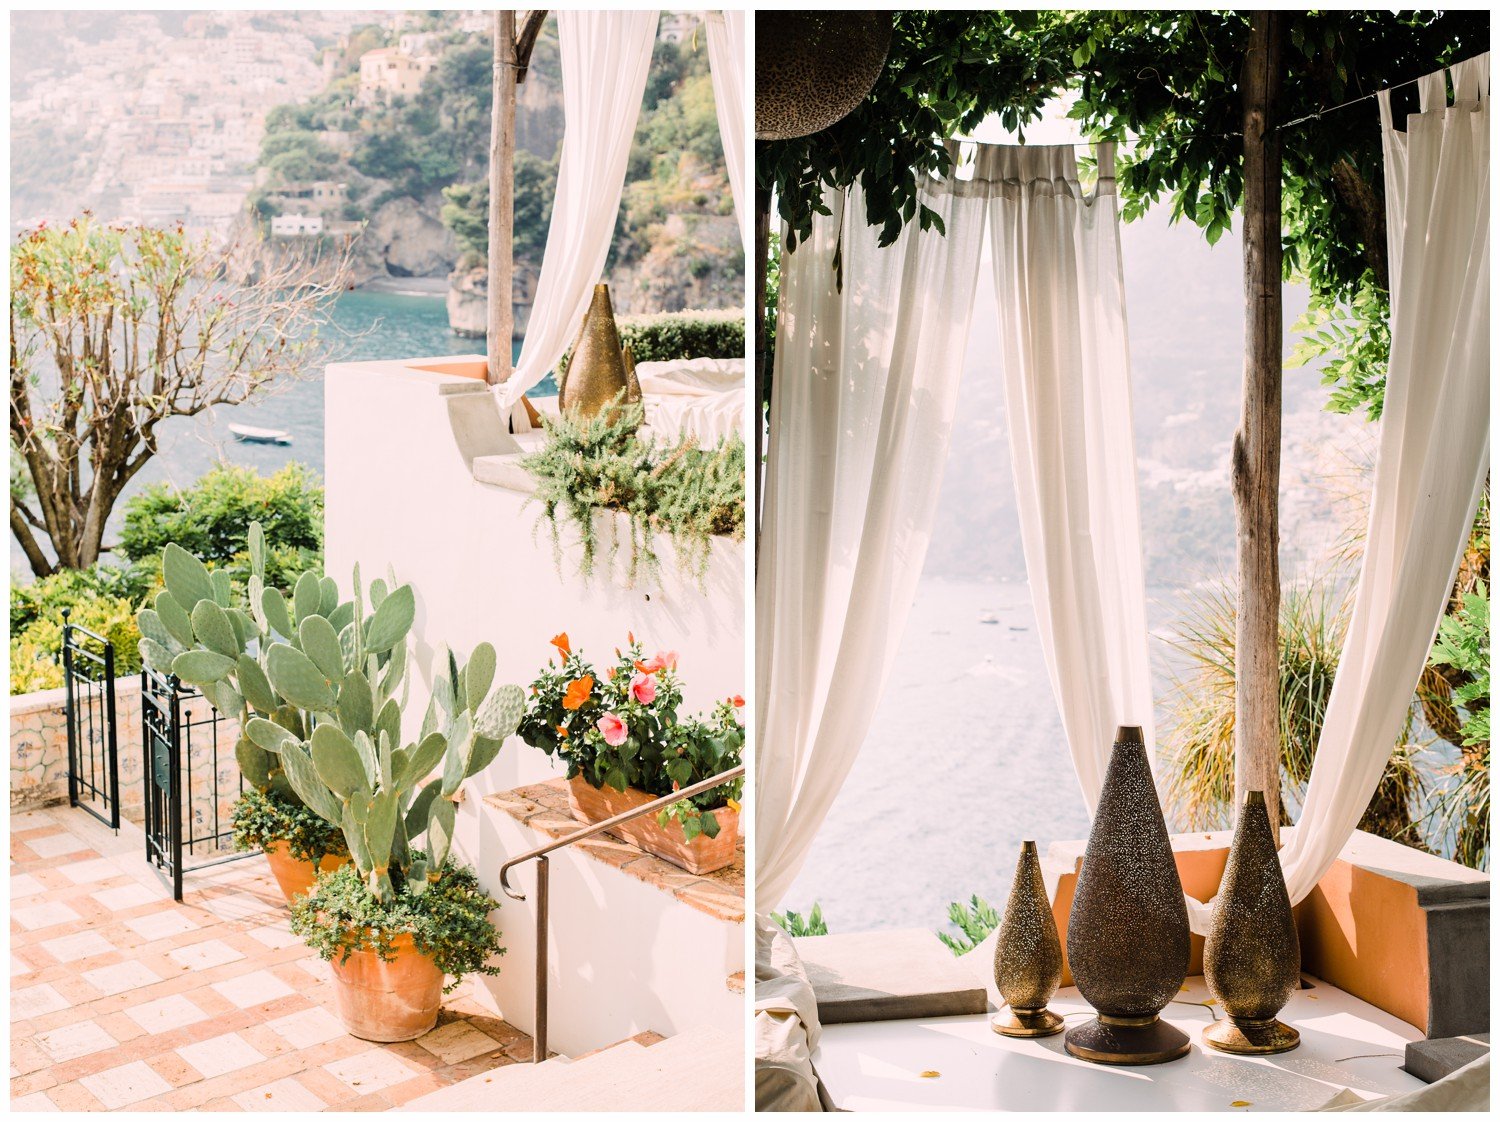 amalfi-coast-positano-ravello-sirenuse-villa-cimbrone-wedding-photographer_0051.jpg